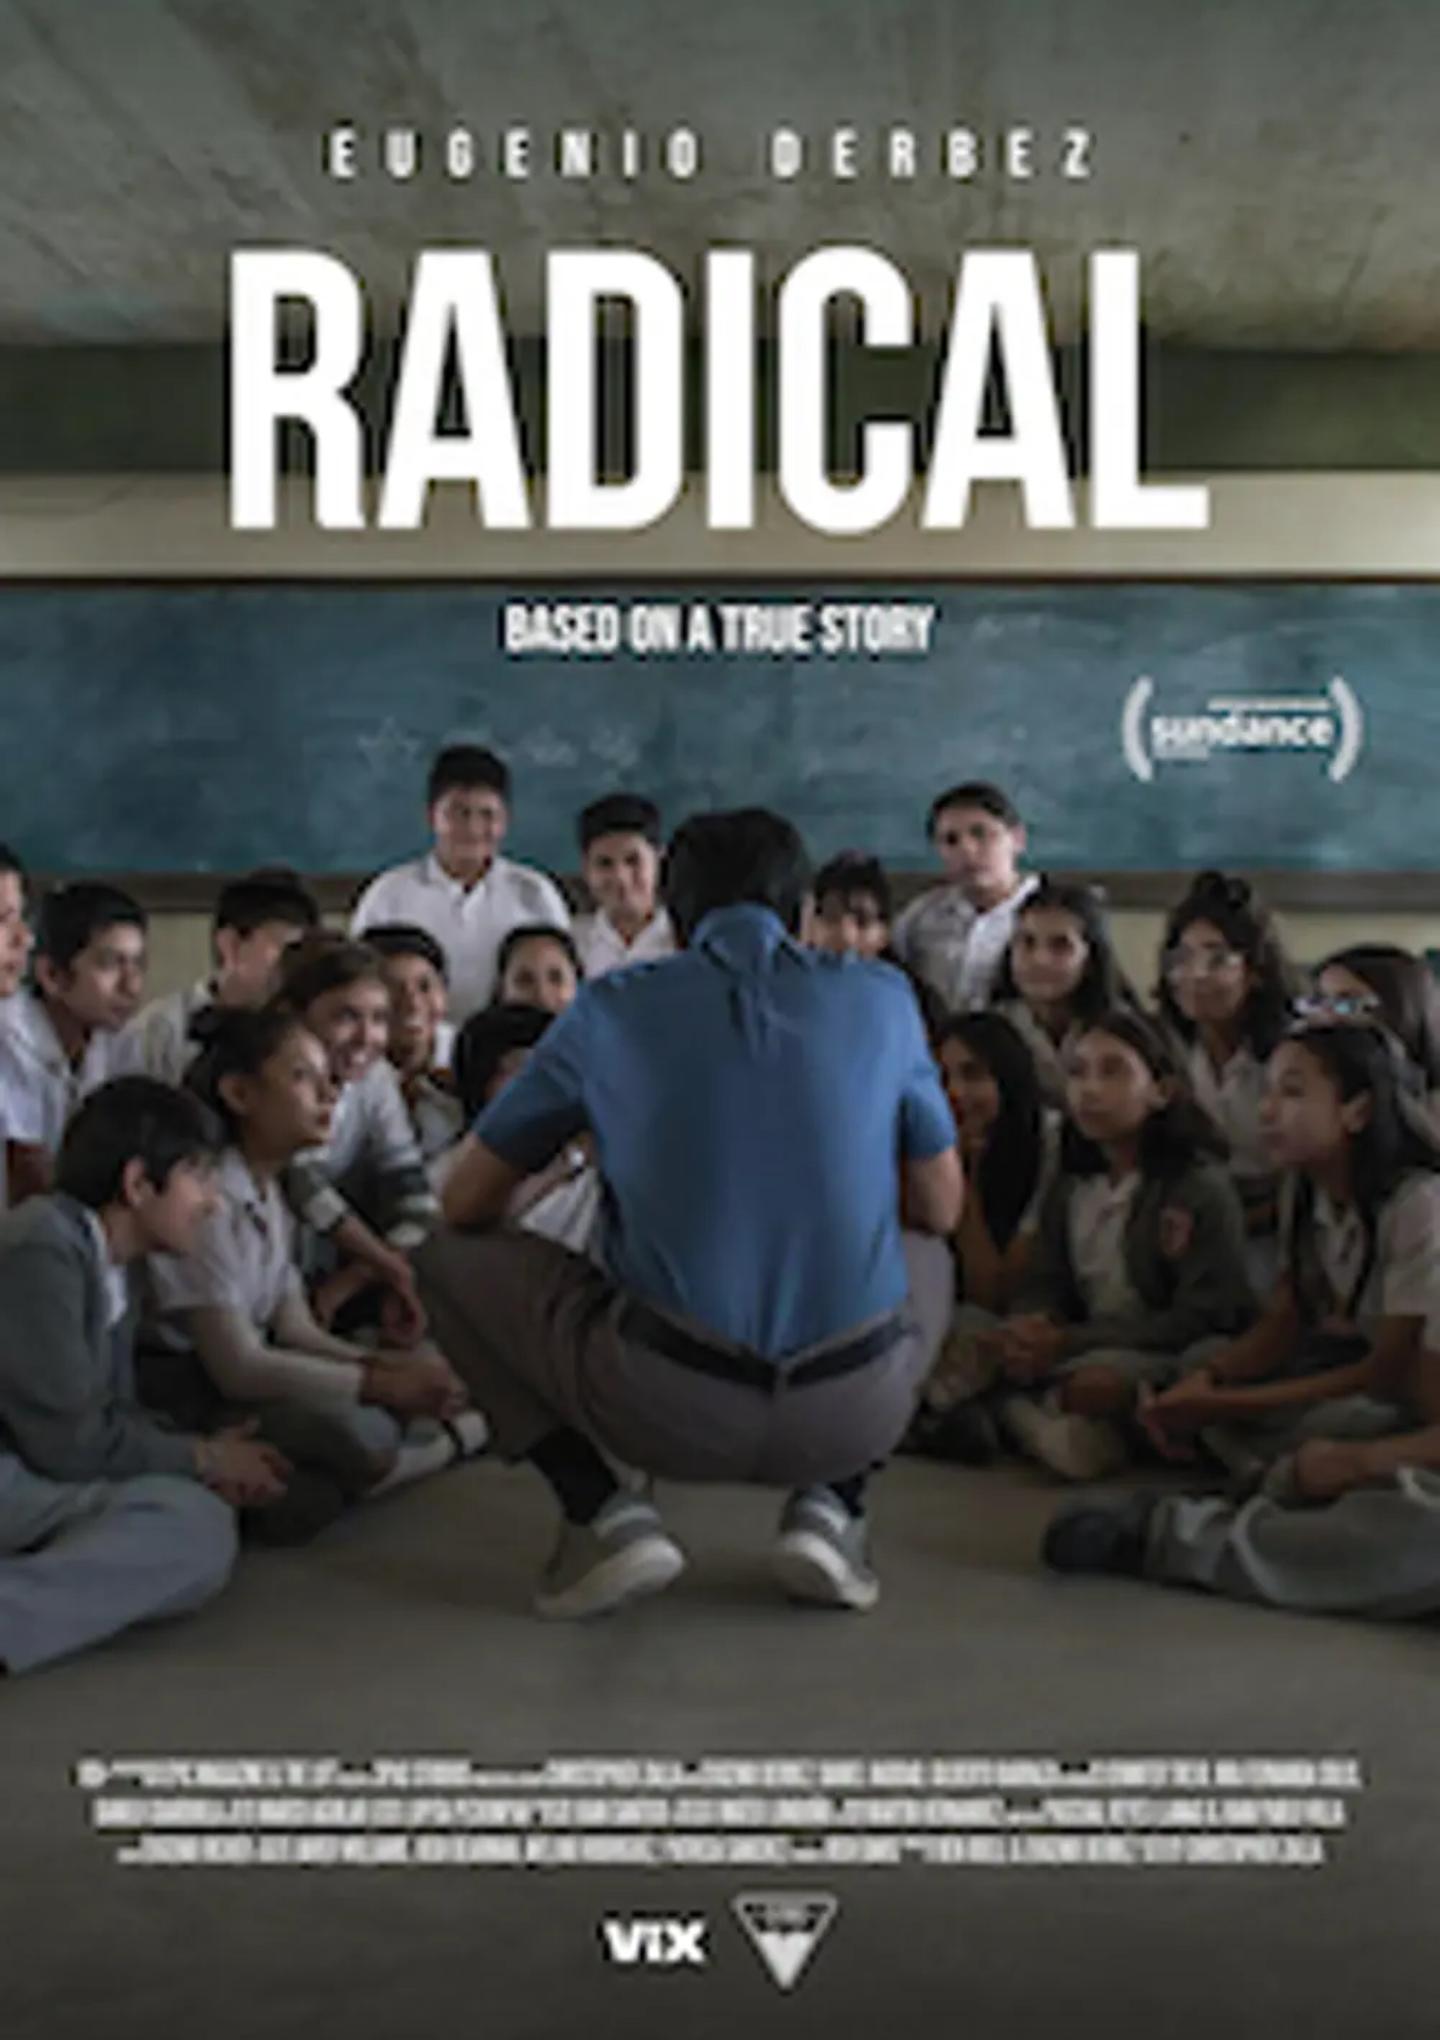 Plakat for 'Radical'